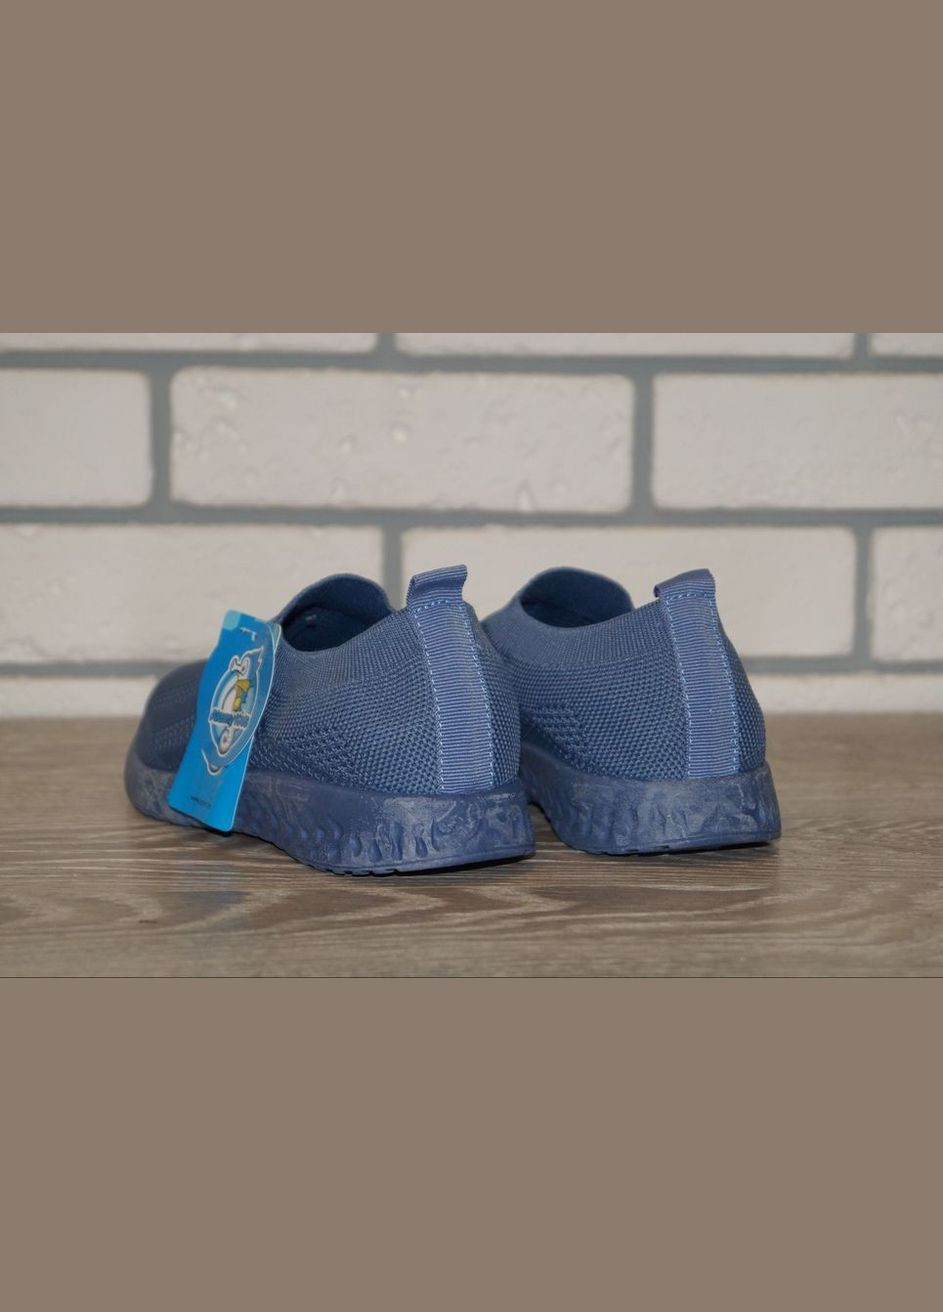 Синие демисезонные кроссовки для мальчика синие Alemy Kids